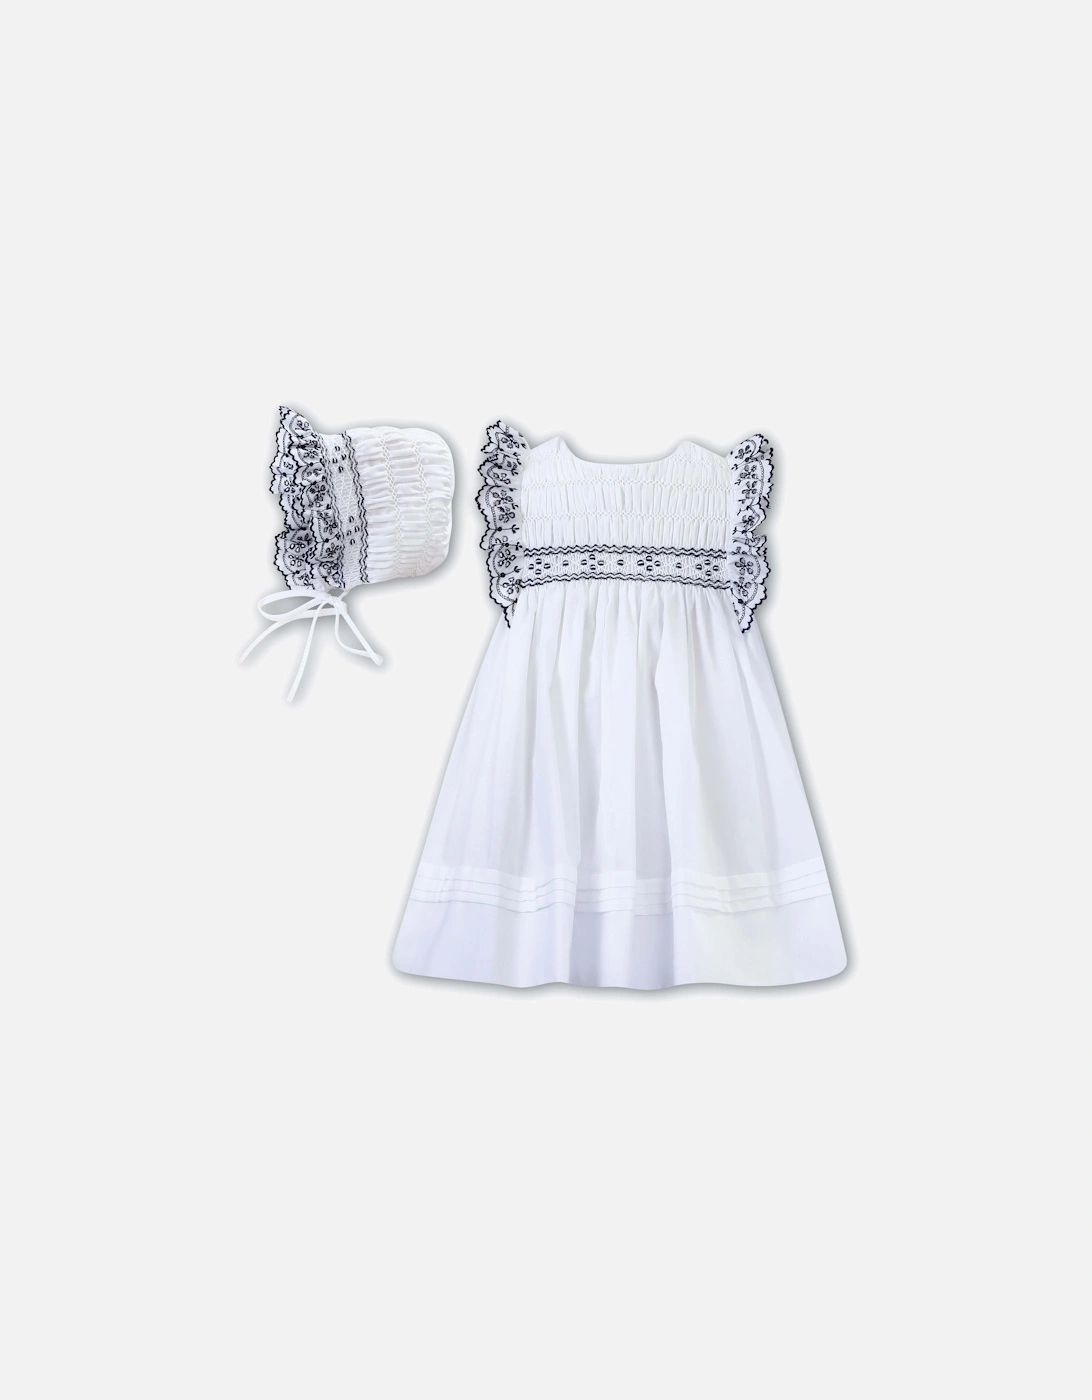 Girls White Smocked Dress & Bonnet, 2 of 1